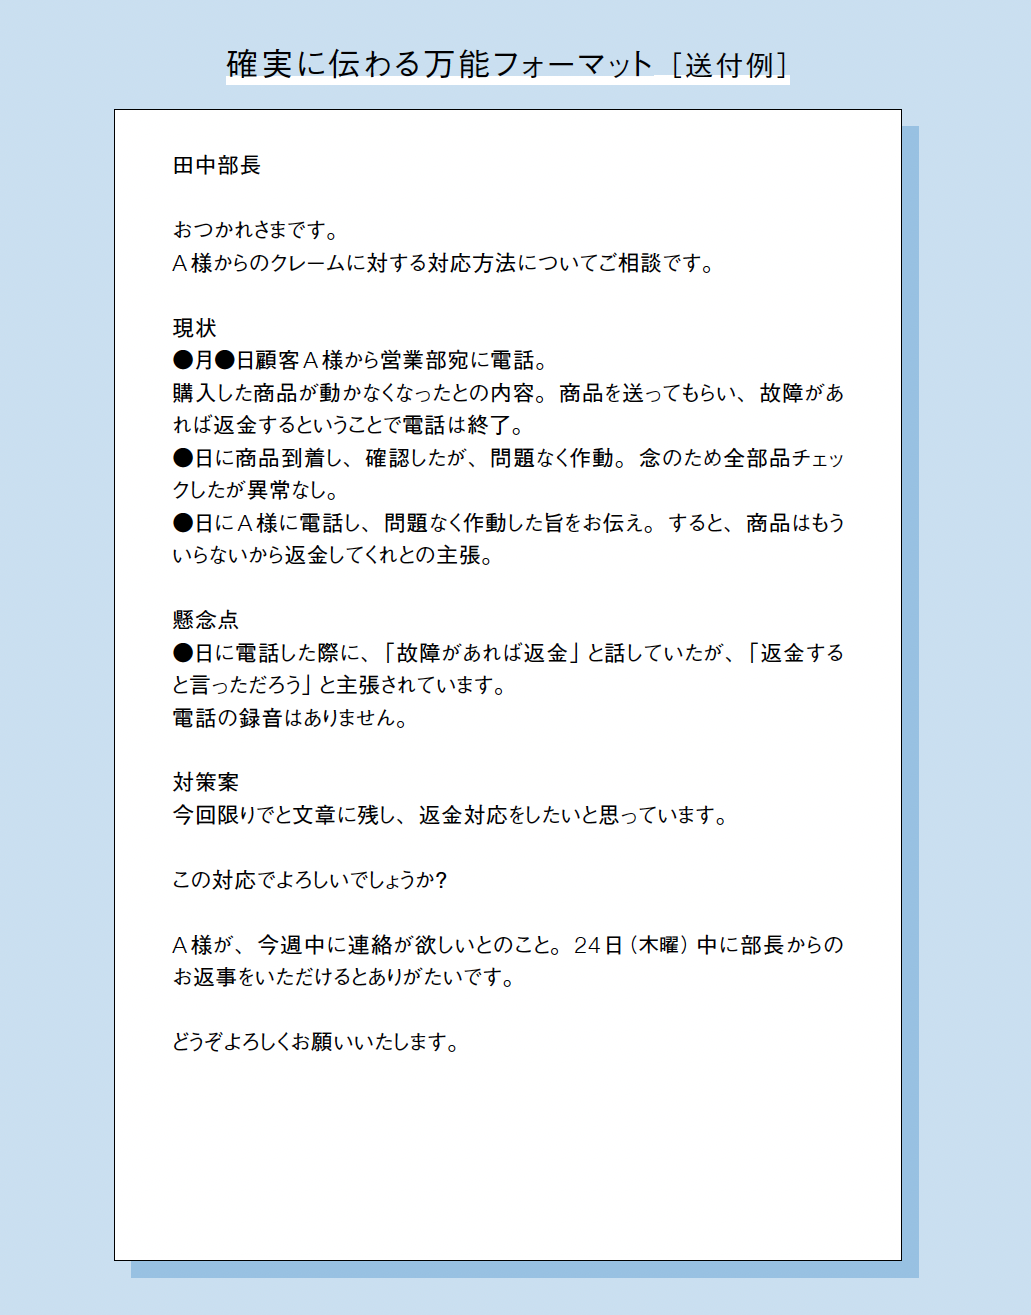 田中部長（仮）とのやりとりを想定して記入したフォーマットをもとに、作成された文章例。「現状」「懸念点」「対策」に話を分けて綺麗に情報がまとまっている。